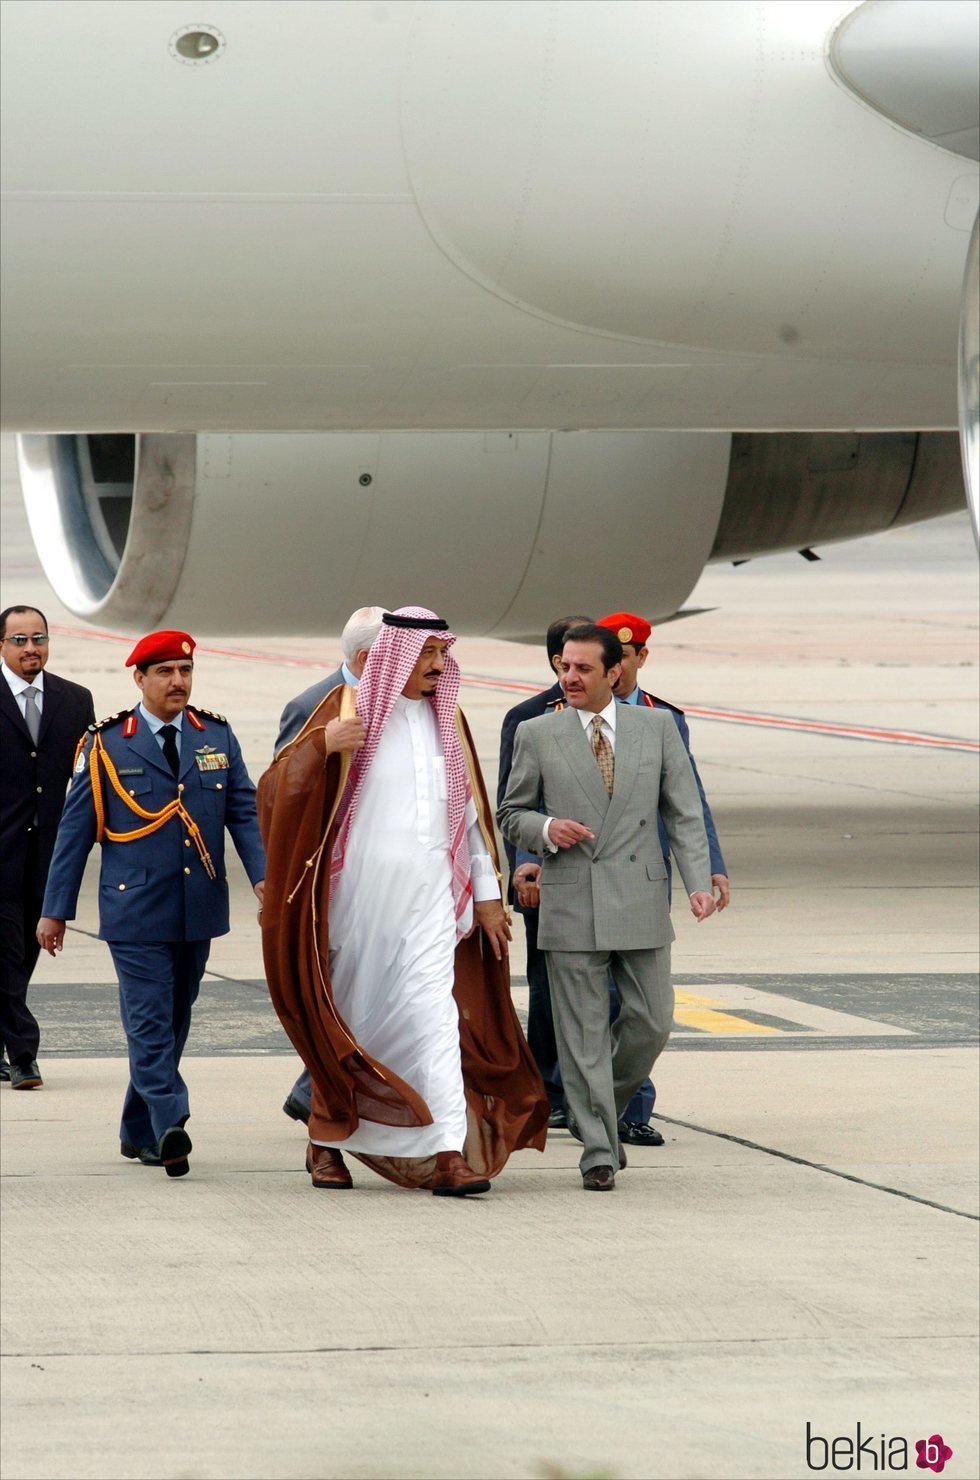 El Rey Salmán de Arabia Saudí llegando al aeropuerto de Barajas